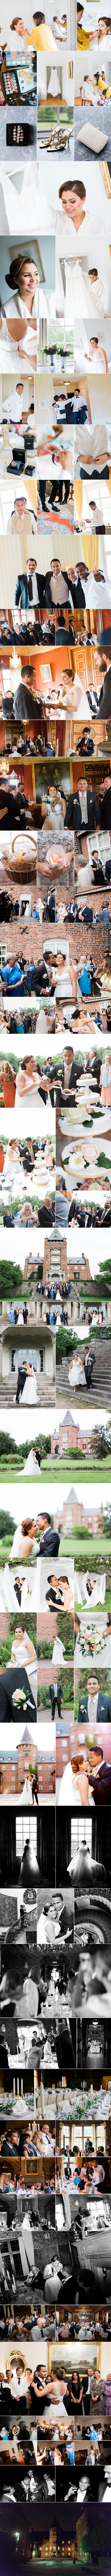 Sarah och David, 15:e augusti 2015, Trollenäs slott, Eslöv. Bröllopsfotograf Sanna Dolck.